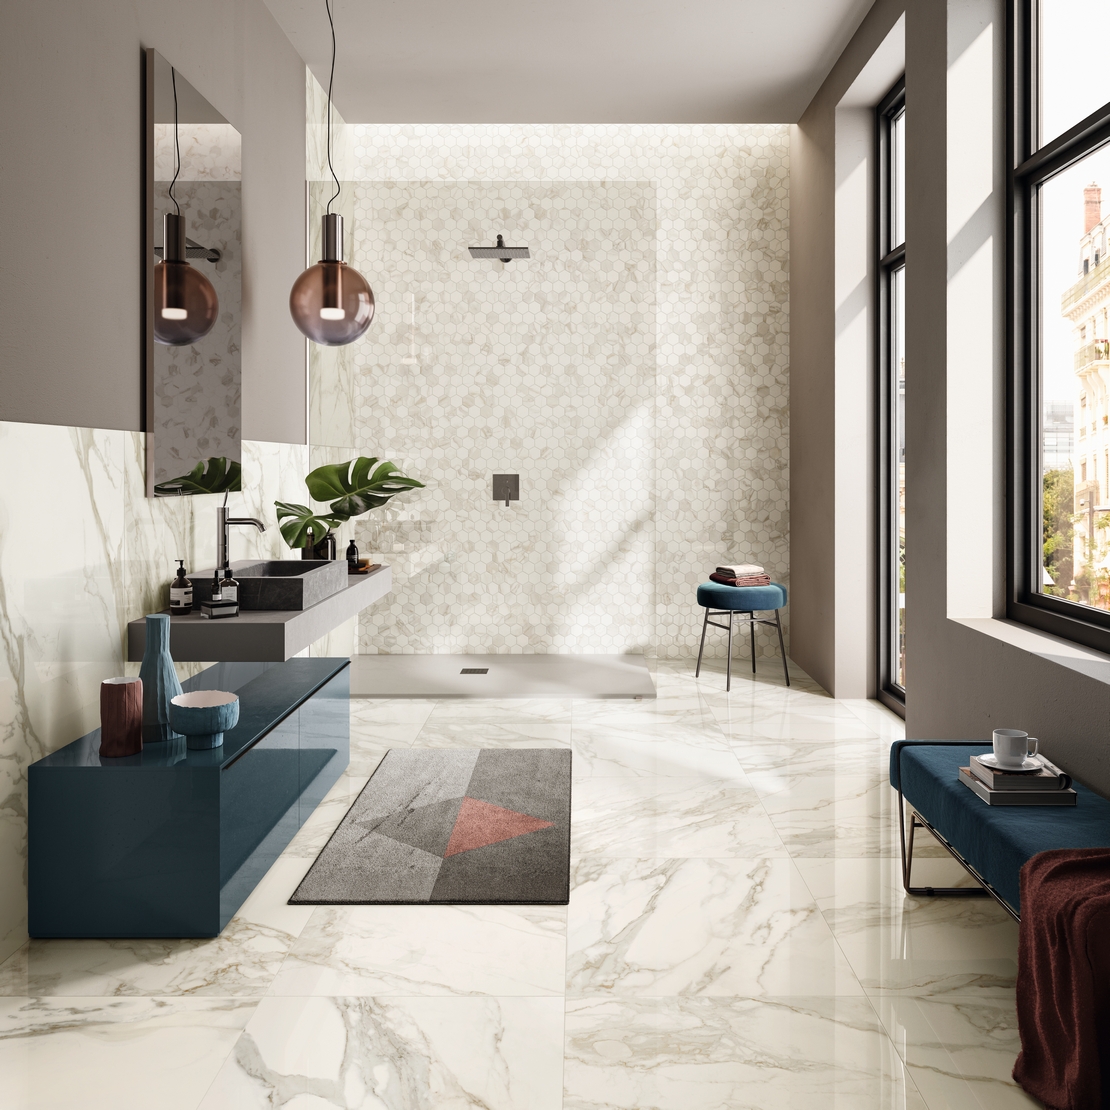 Modernes Badezimmer mit Dusche. Mosaik und Calacatta Marmoroptik: ein klassischer Luxus - Inspirationen Iperceramica